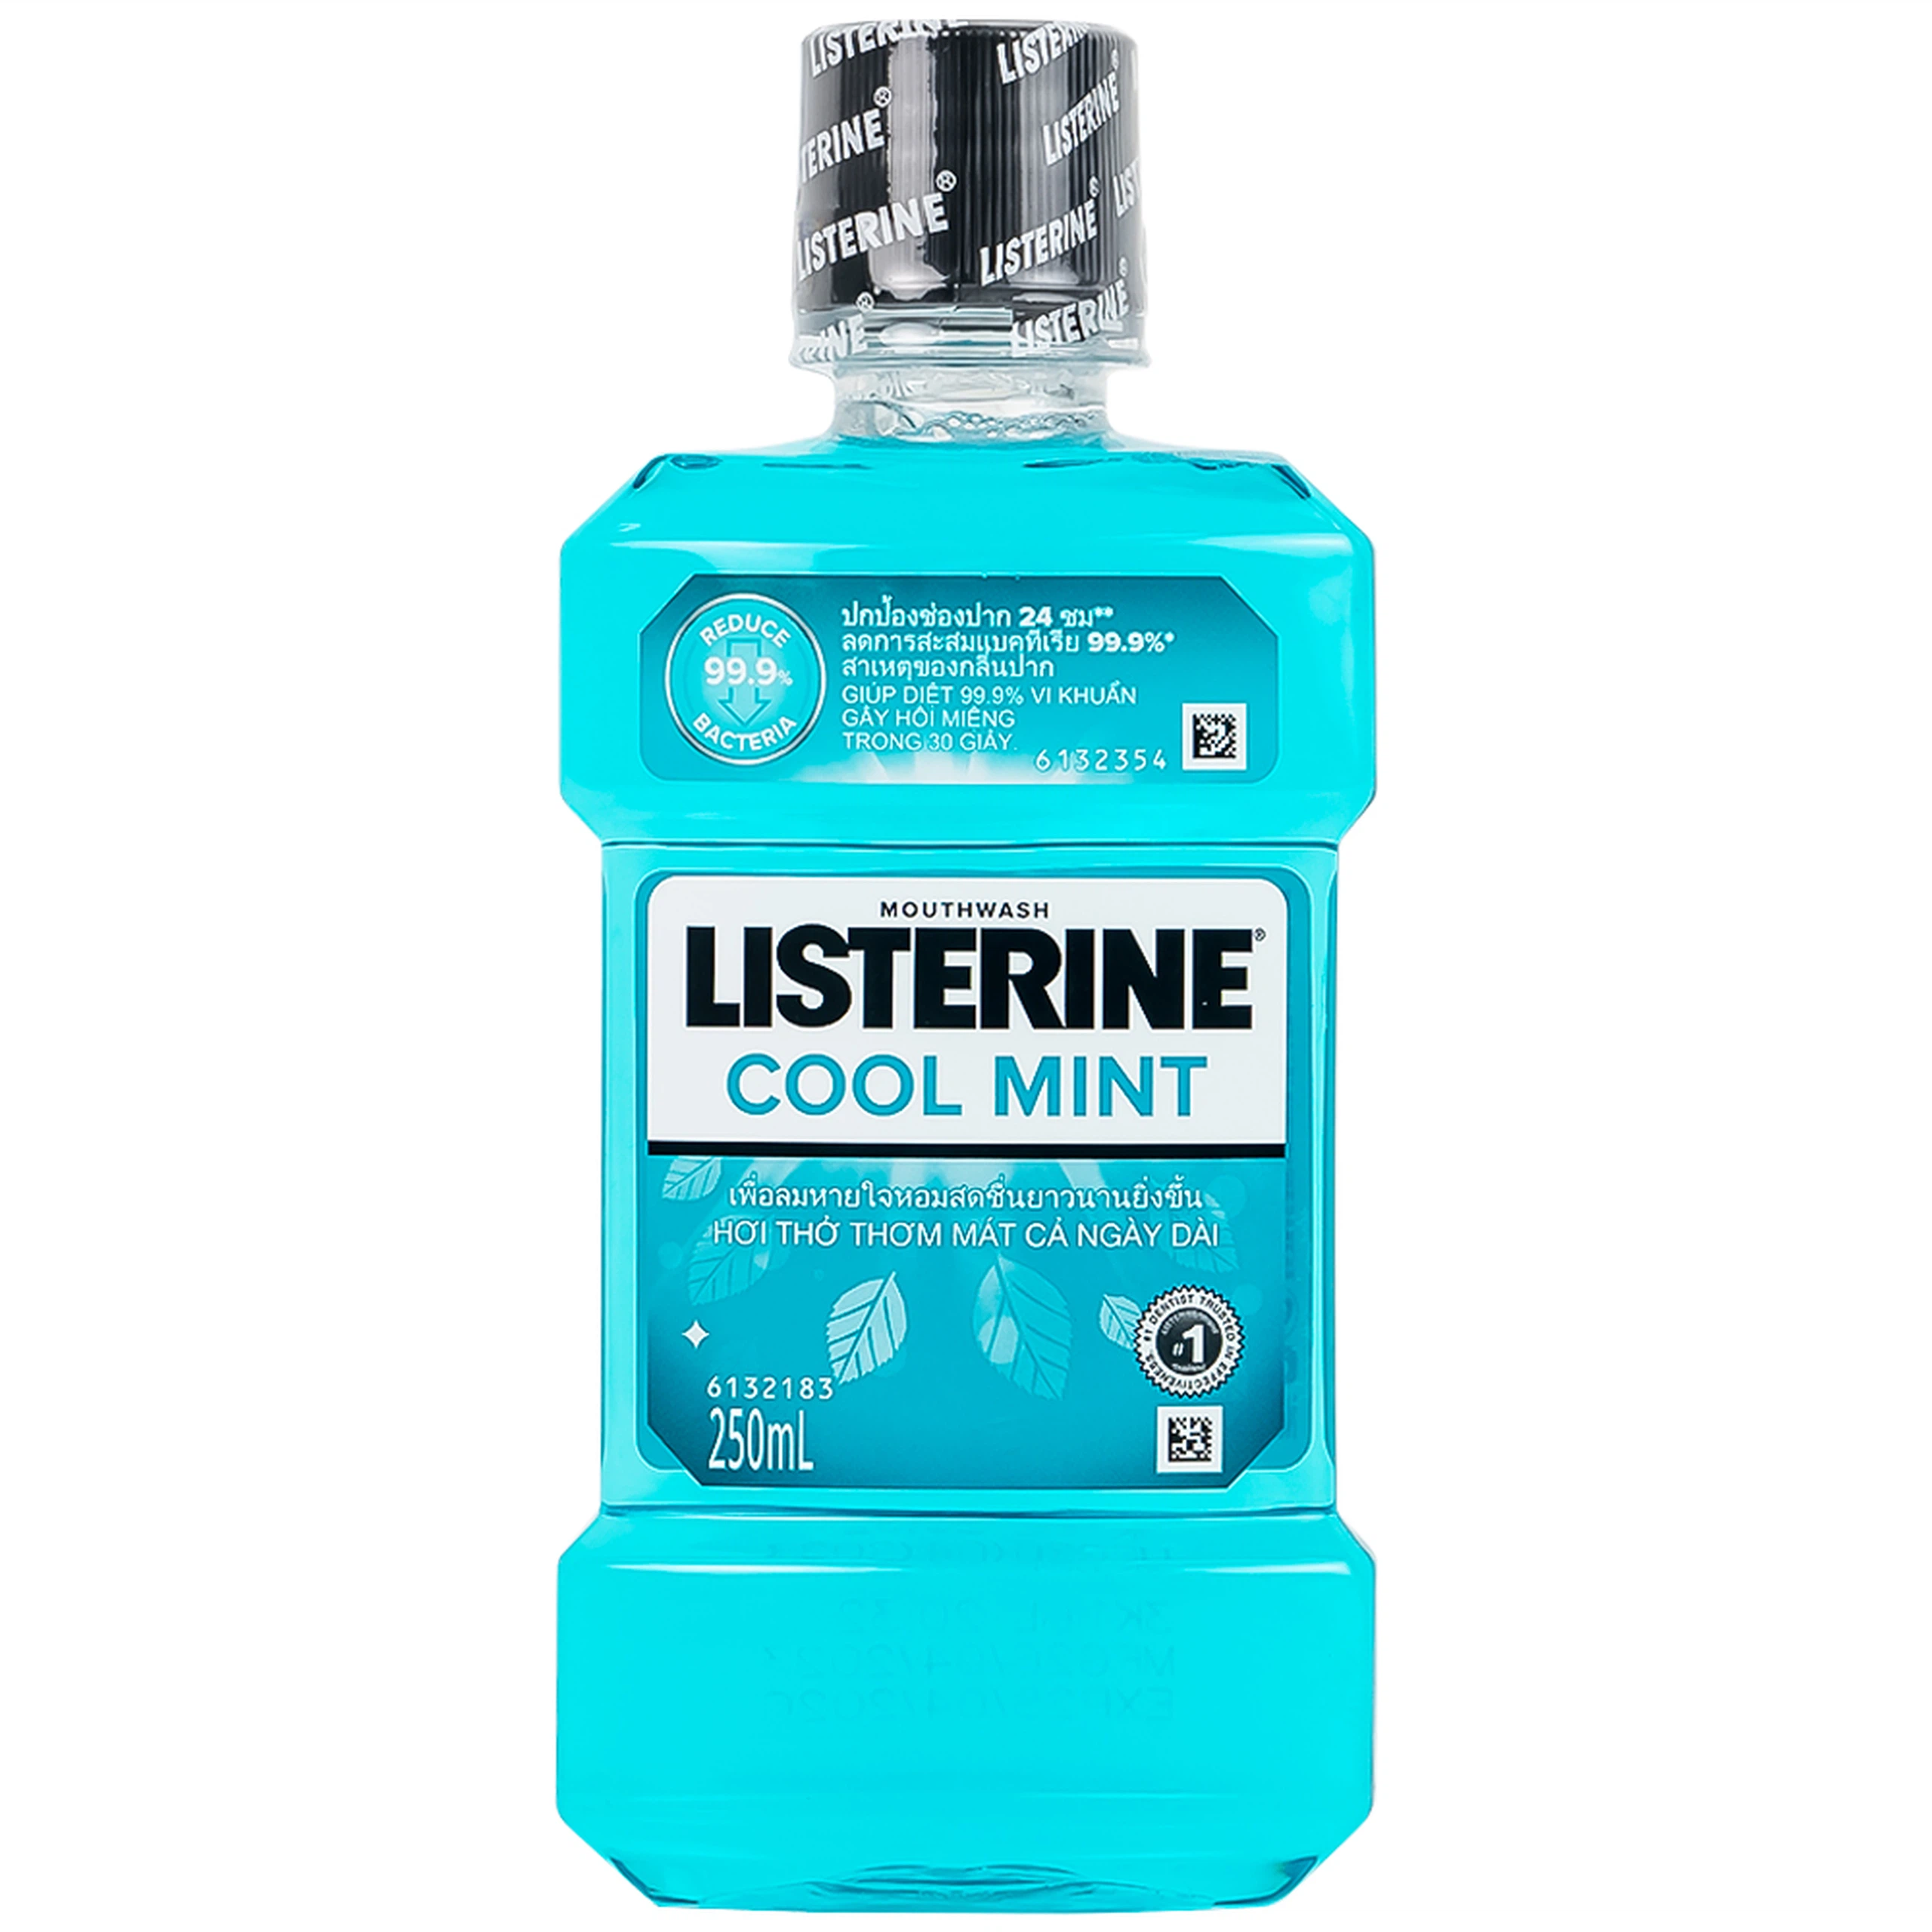 Nước súc miệng Listerine Cool Mint bảo vệ khoang miệng suốt 24h khỏi vi khuẩn hôi miệng, mảng bám, viêm nướu (250ml)